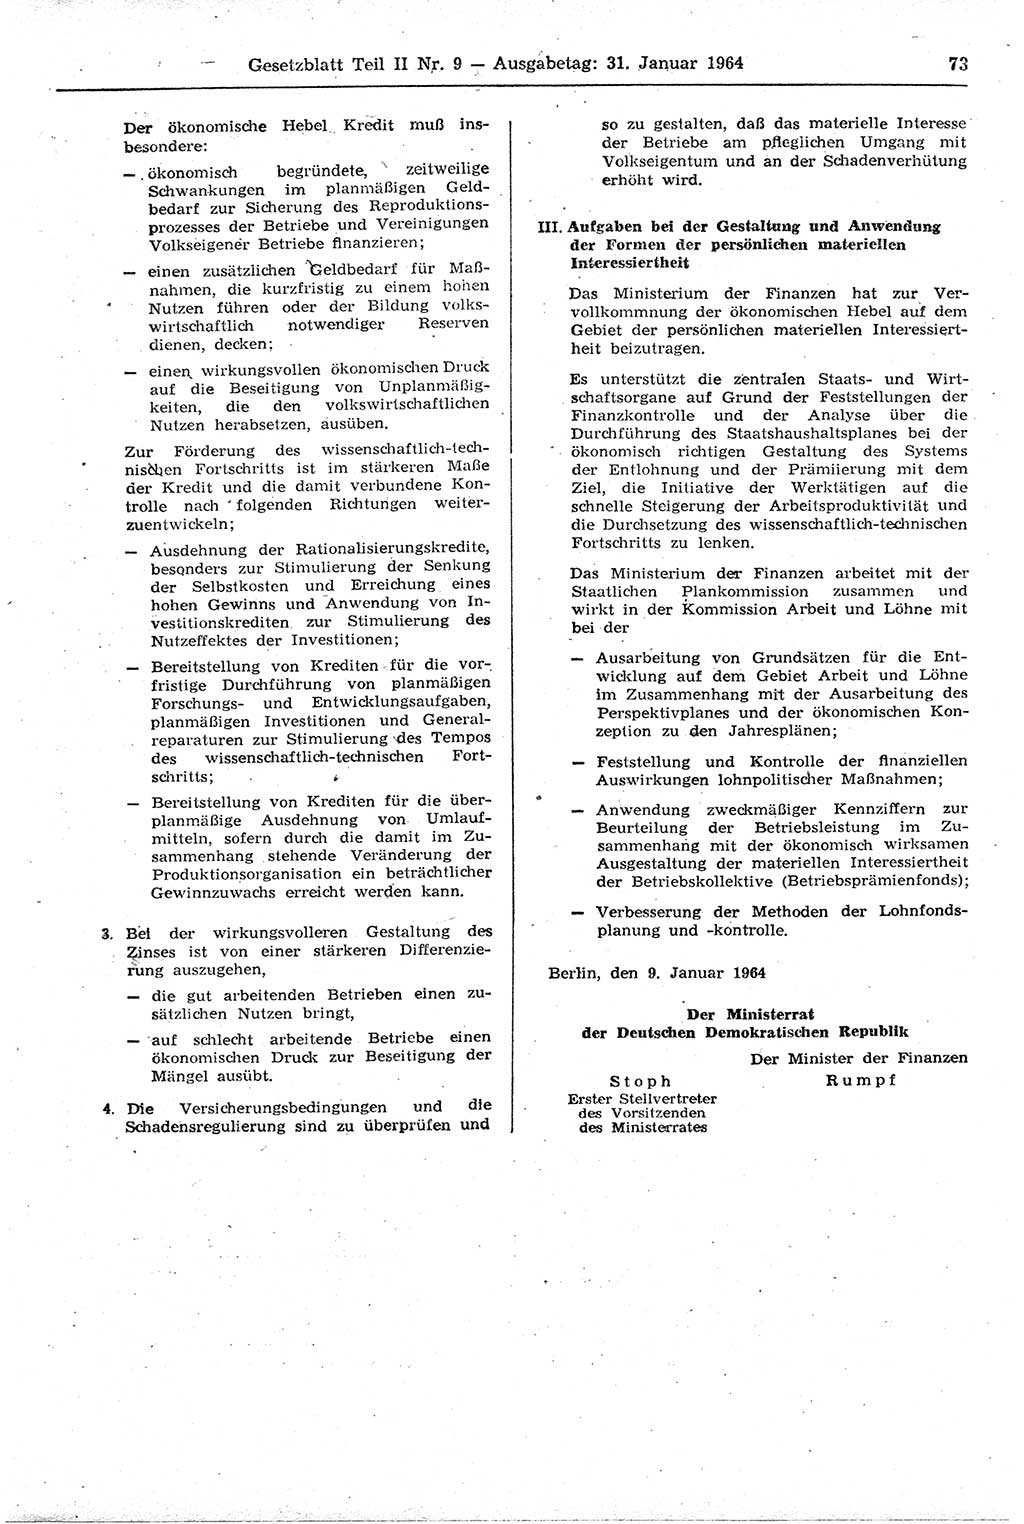 Gesetzblatt (GBl.) der Deutschen Demokratischen Republik (DDR) Teil ⅠⅠ 1964, Seite 73 (GBl. DDR ⅠⅠ 1964, S. 73)